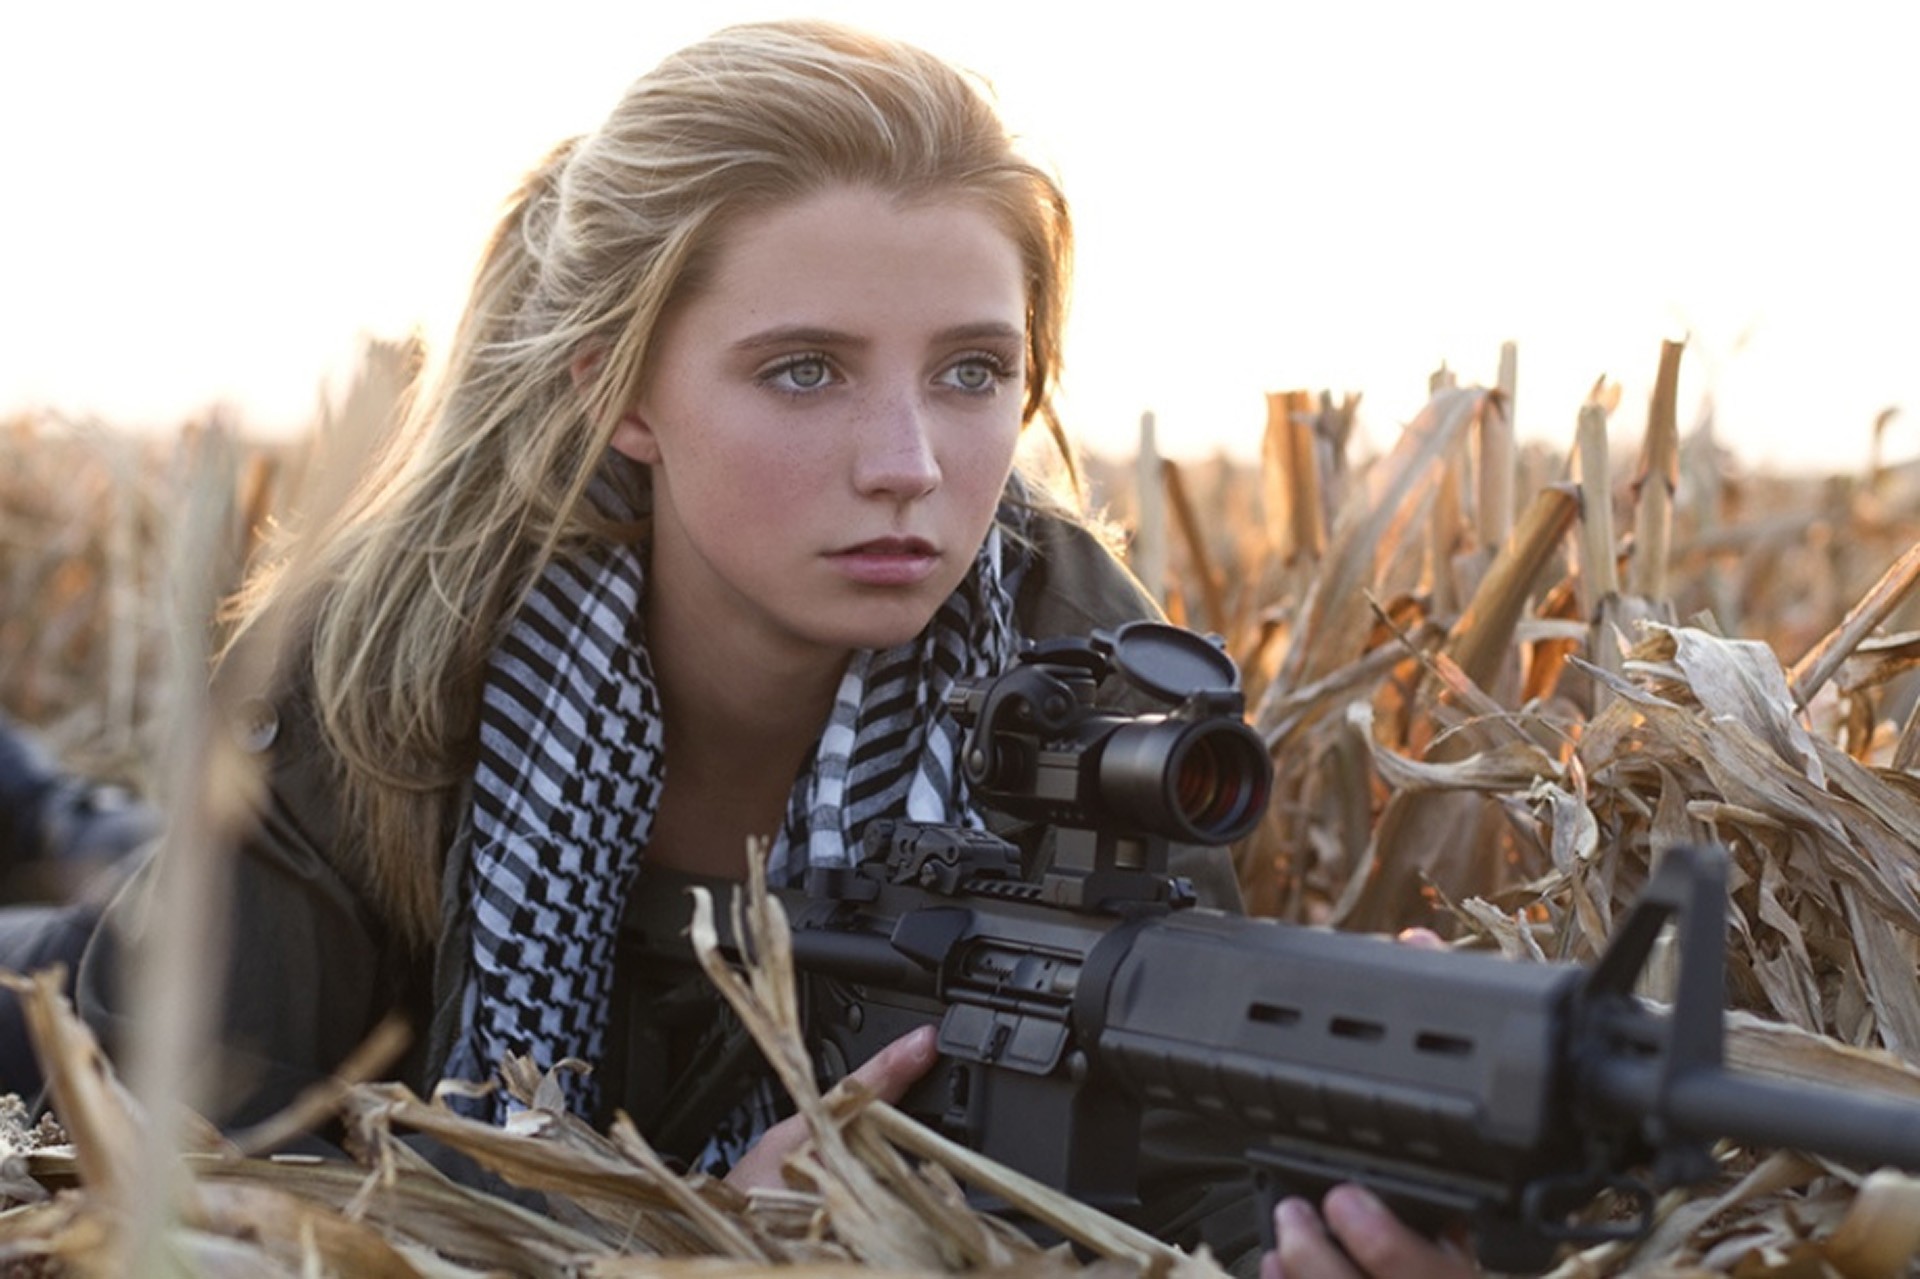 Wallpapers blondes women guns fields outdoors girls with guns